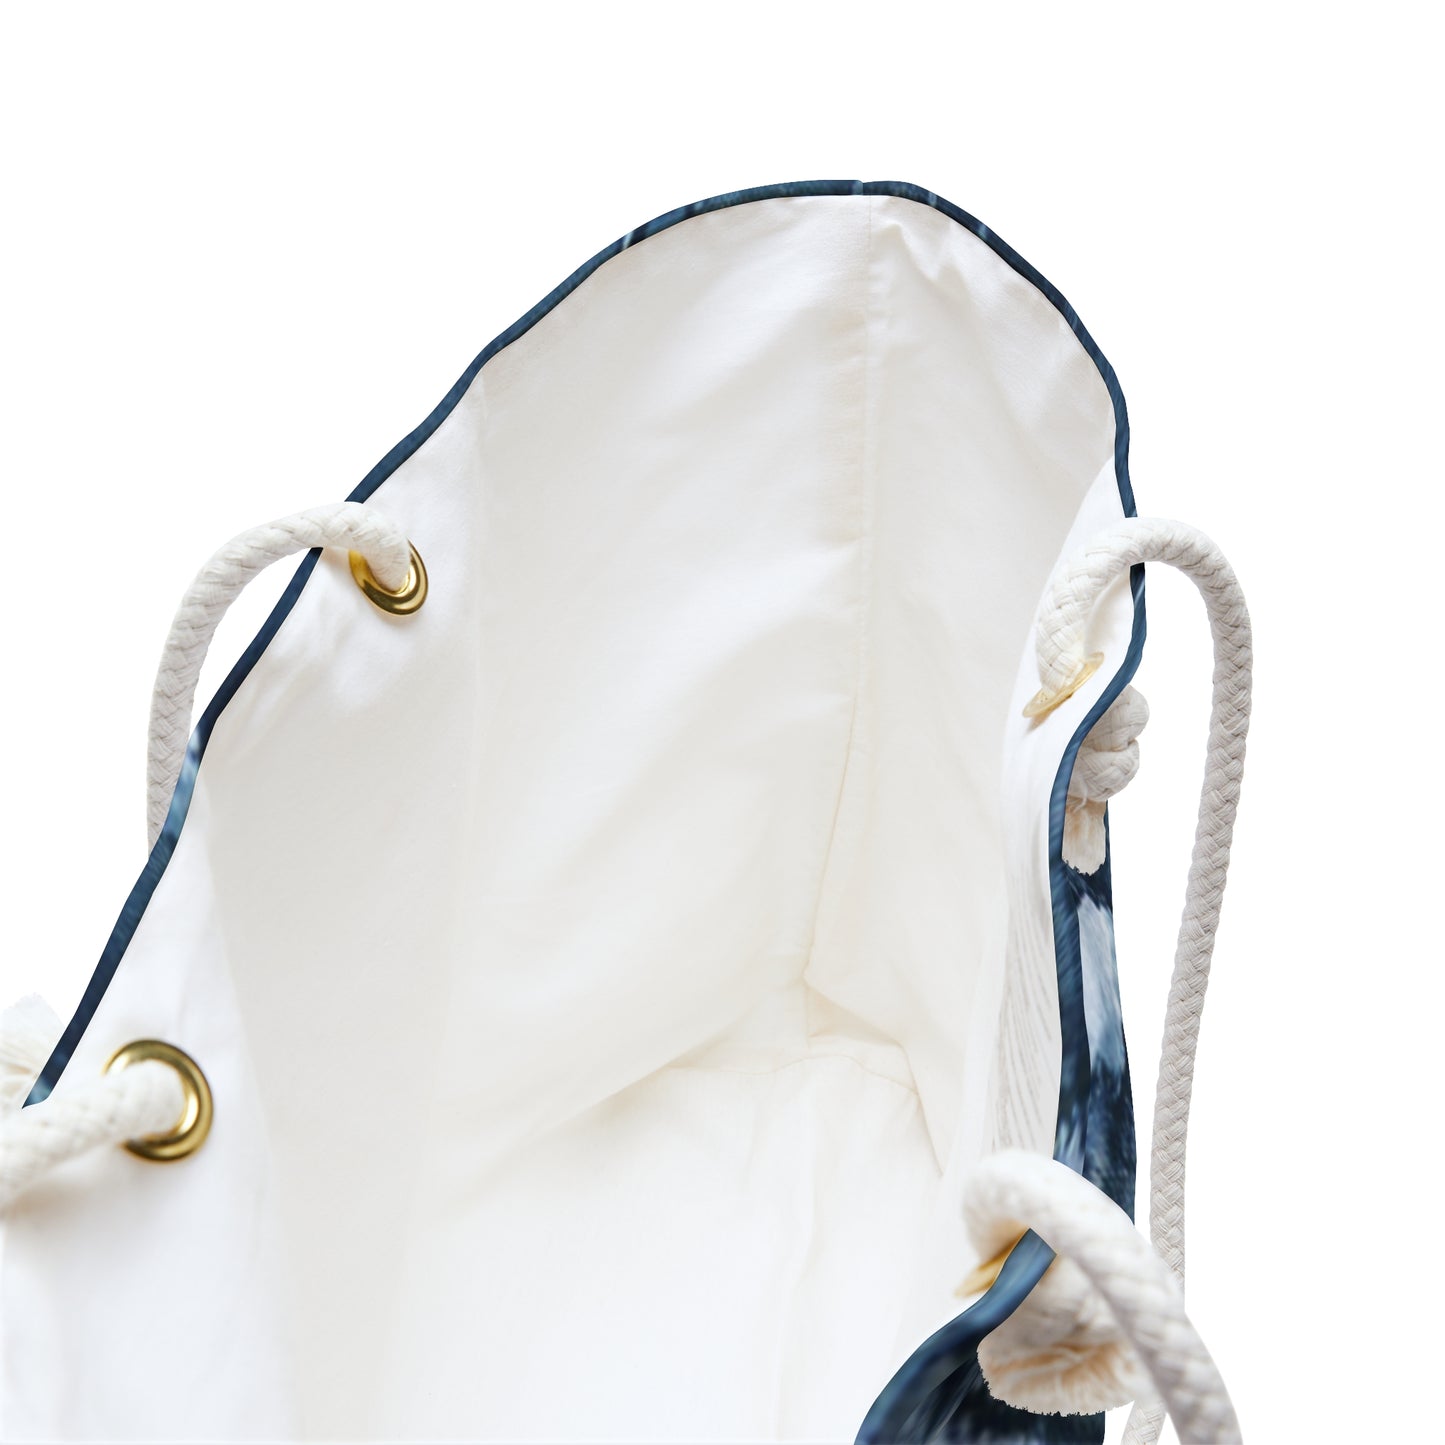 Distressed Blue Denim-Look: Edgy, Torn Fabric Design - Weekender Bag